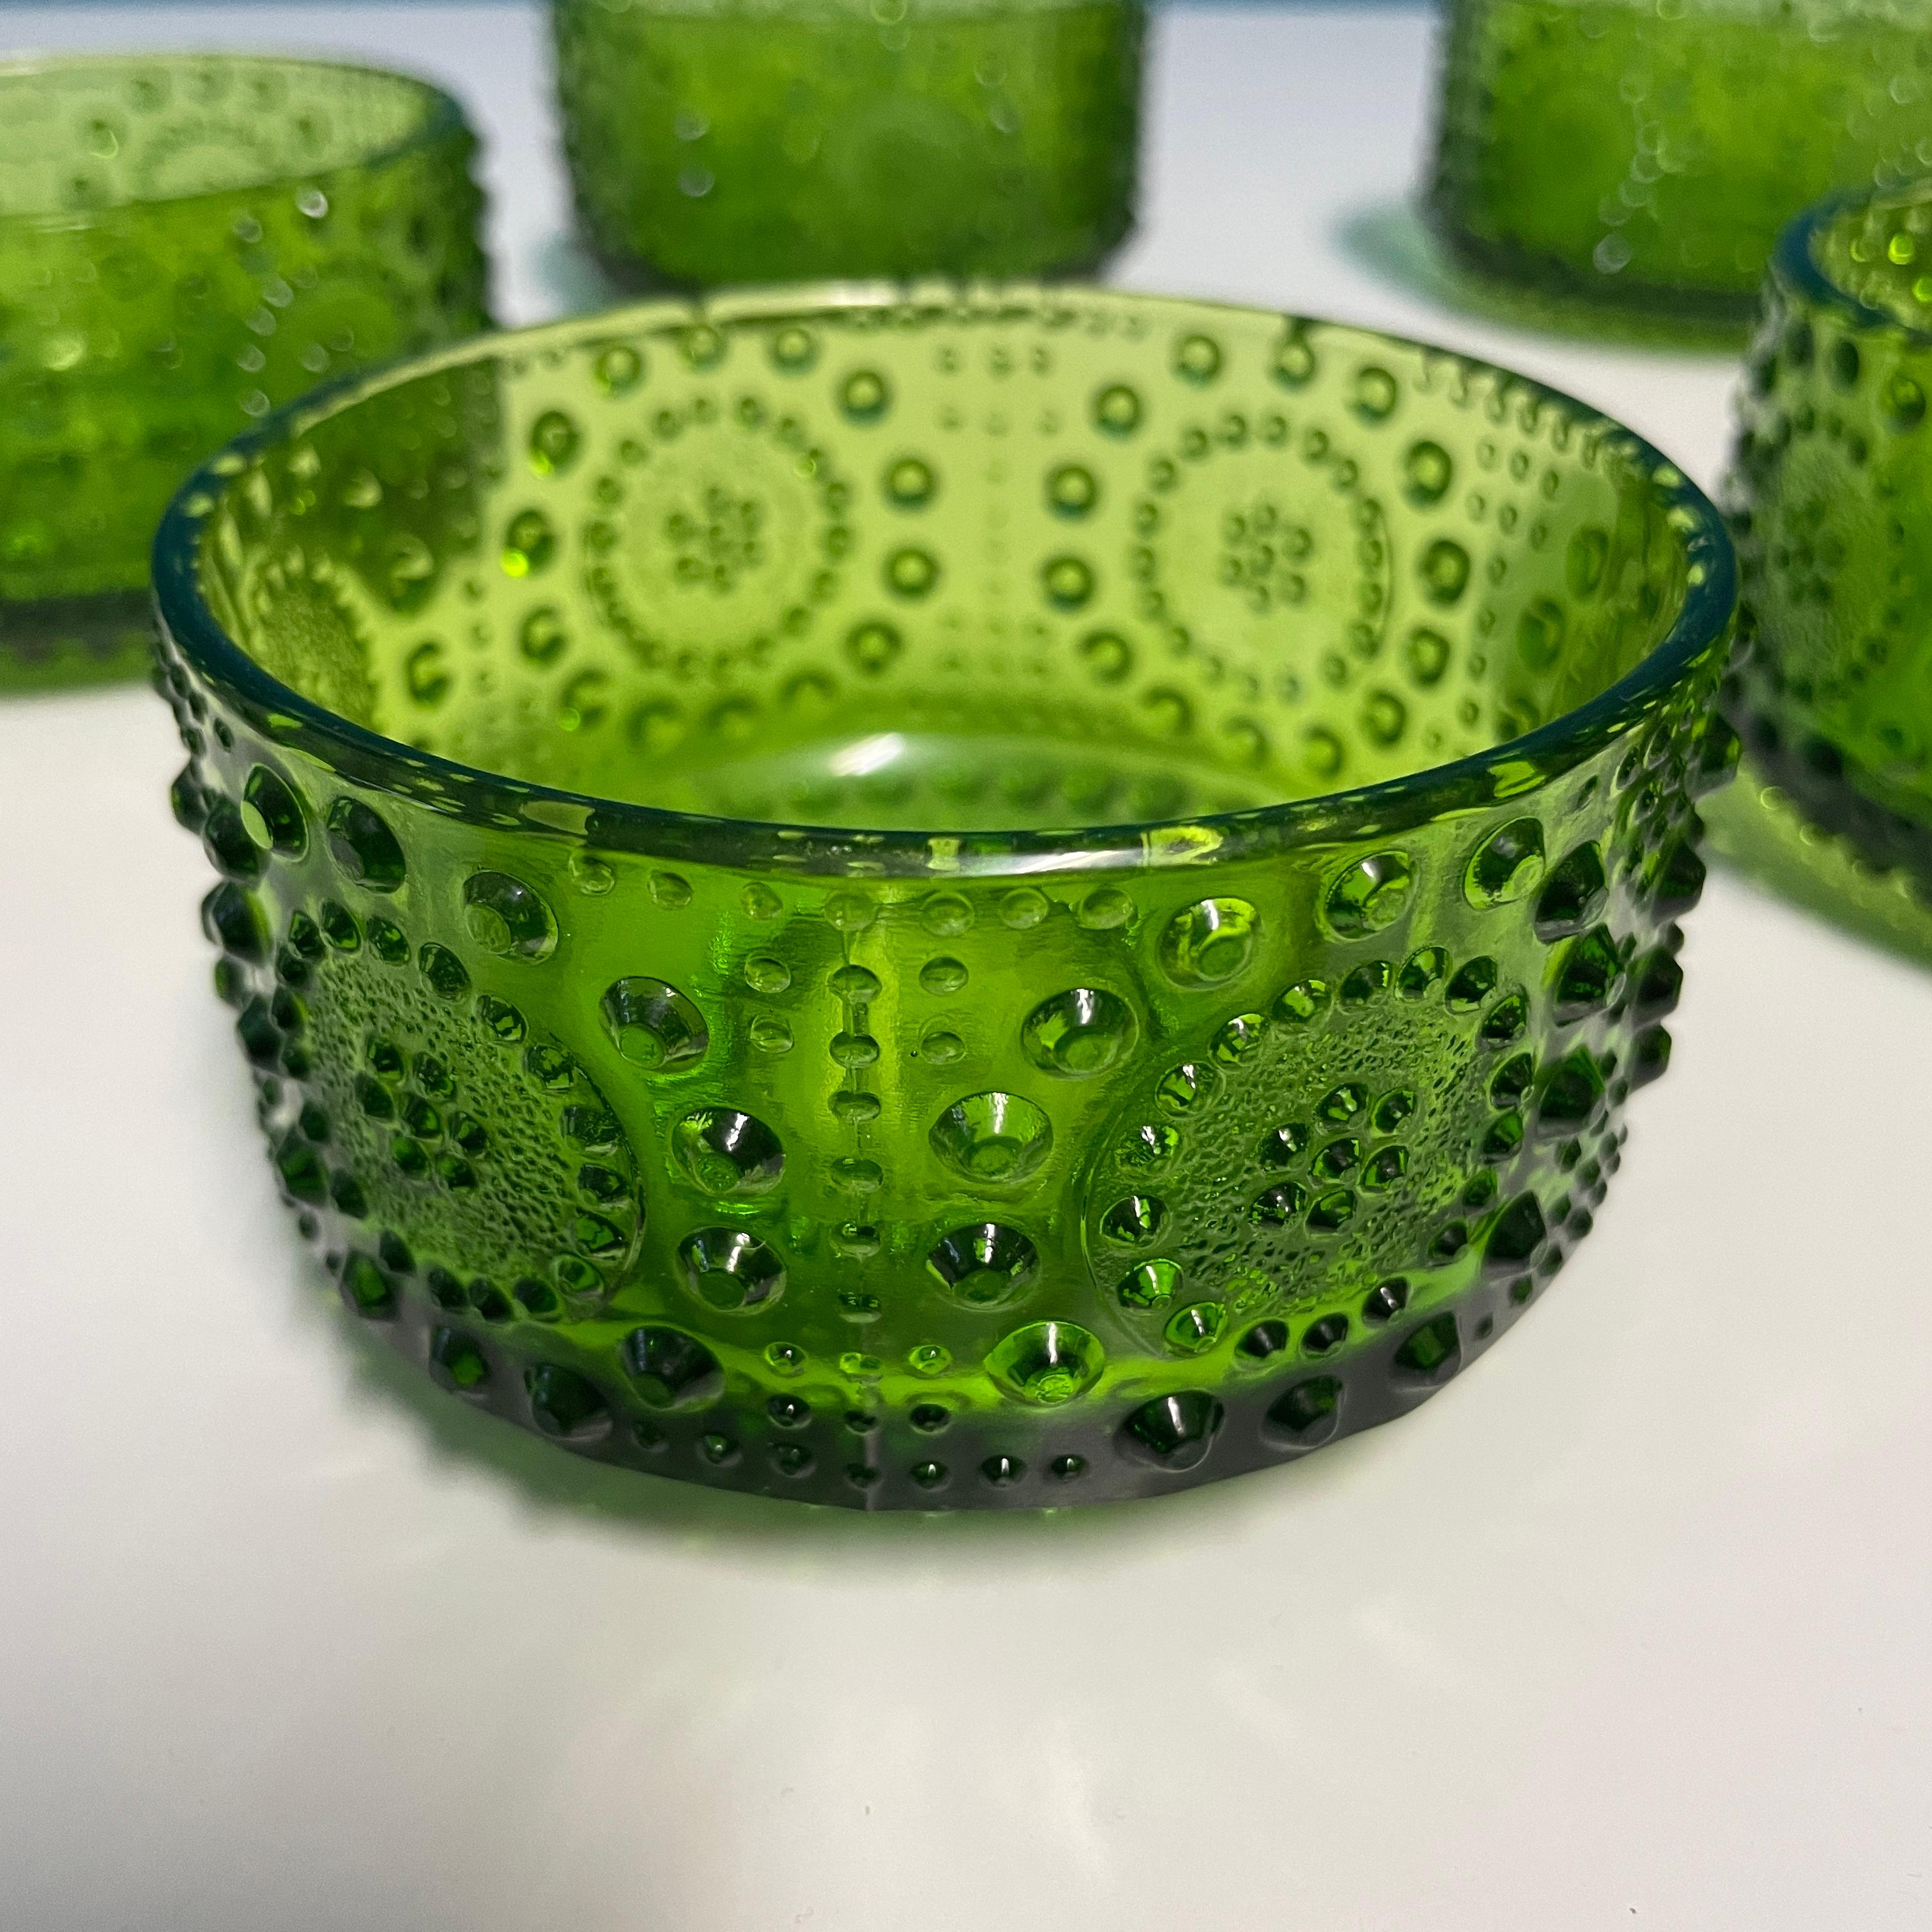 Le bol à dessert Grapponia fabriqué par Riihimäki Glassworks fait partie de la série Grapponia conçue par Nanny Still à la fin des années 1960.
Ces bols verts sont décorés d'un magnifique motif de clous de girofle et sont parfaits pour ajouter une